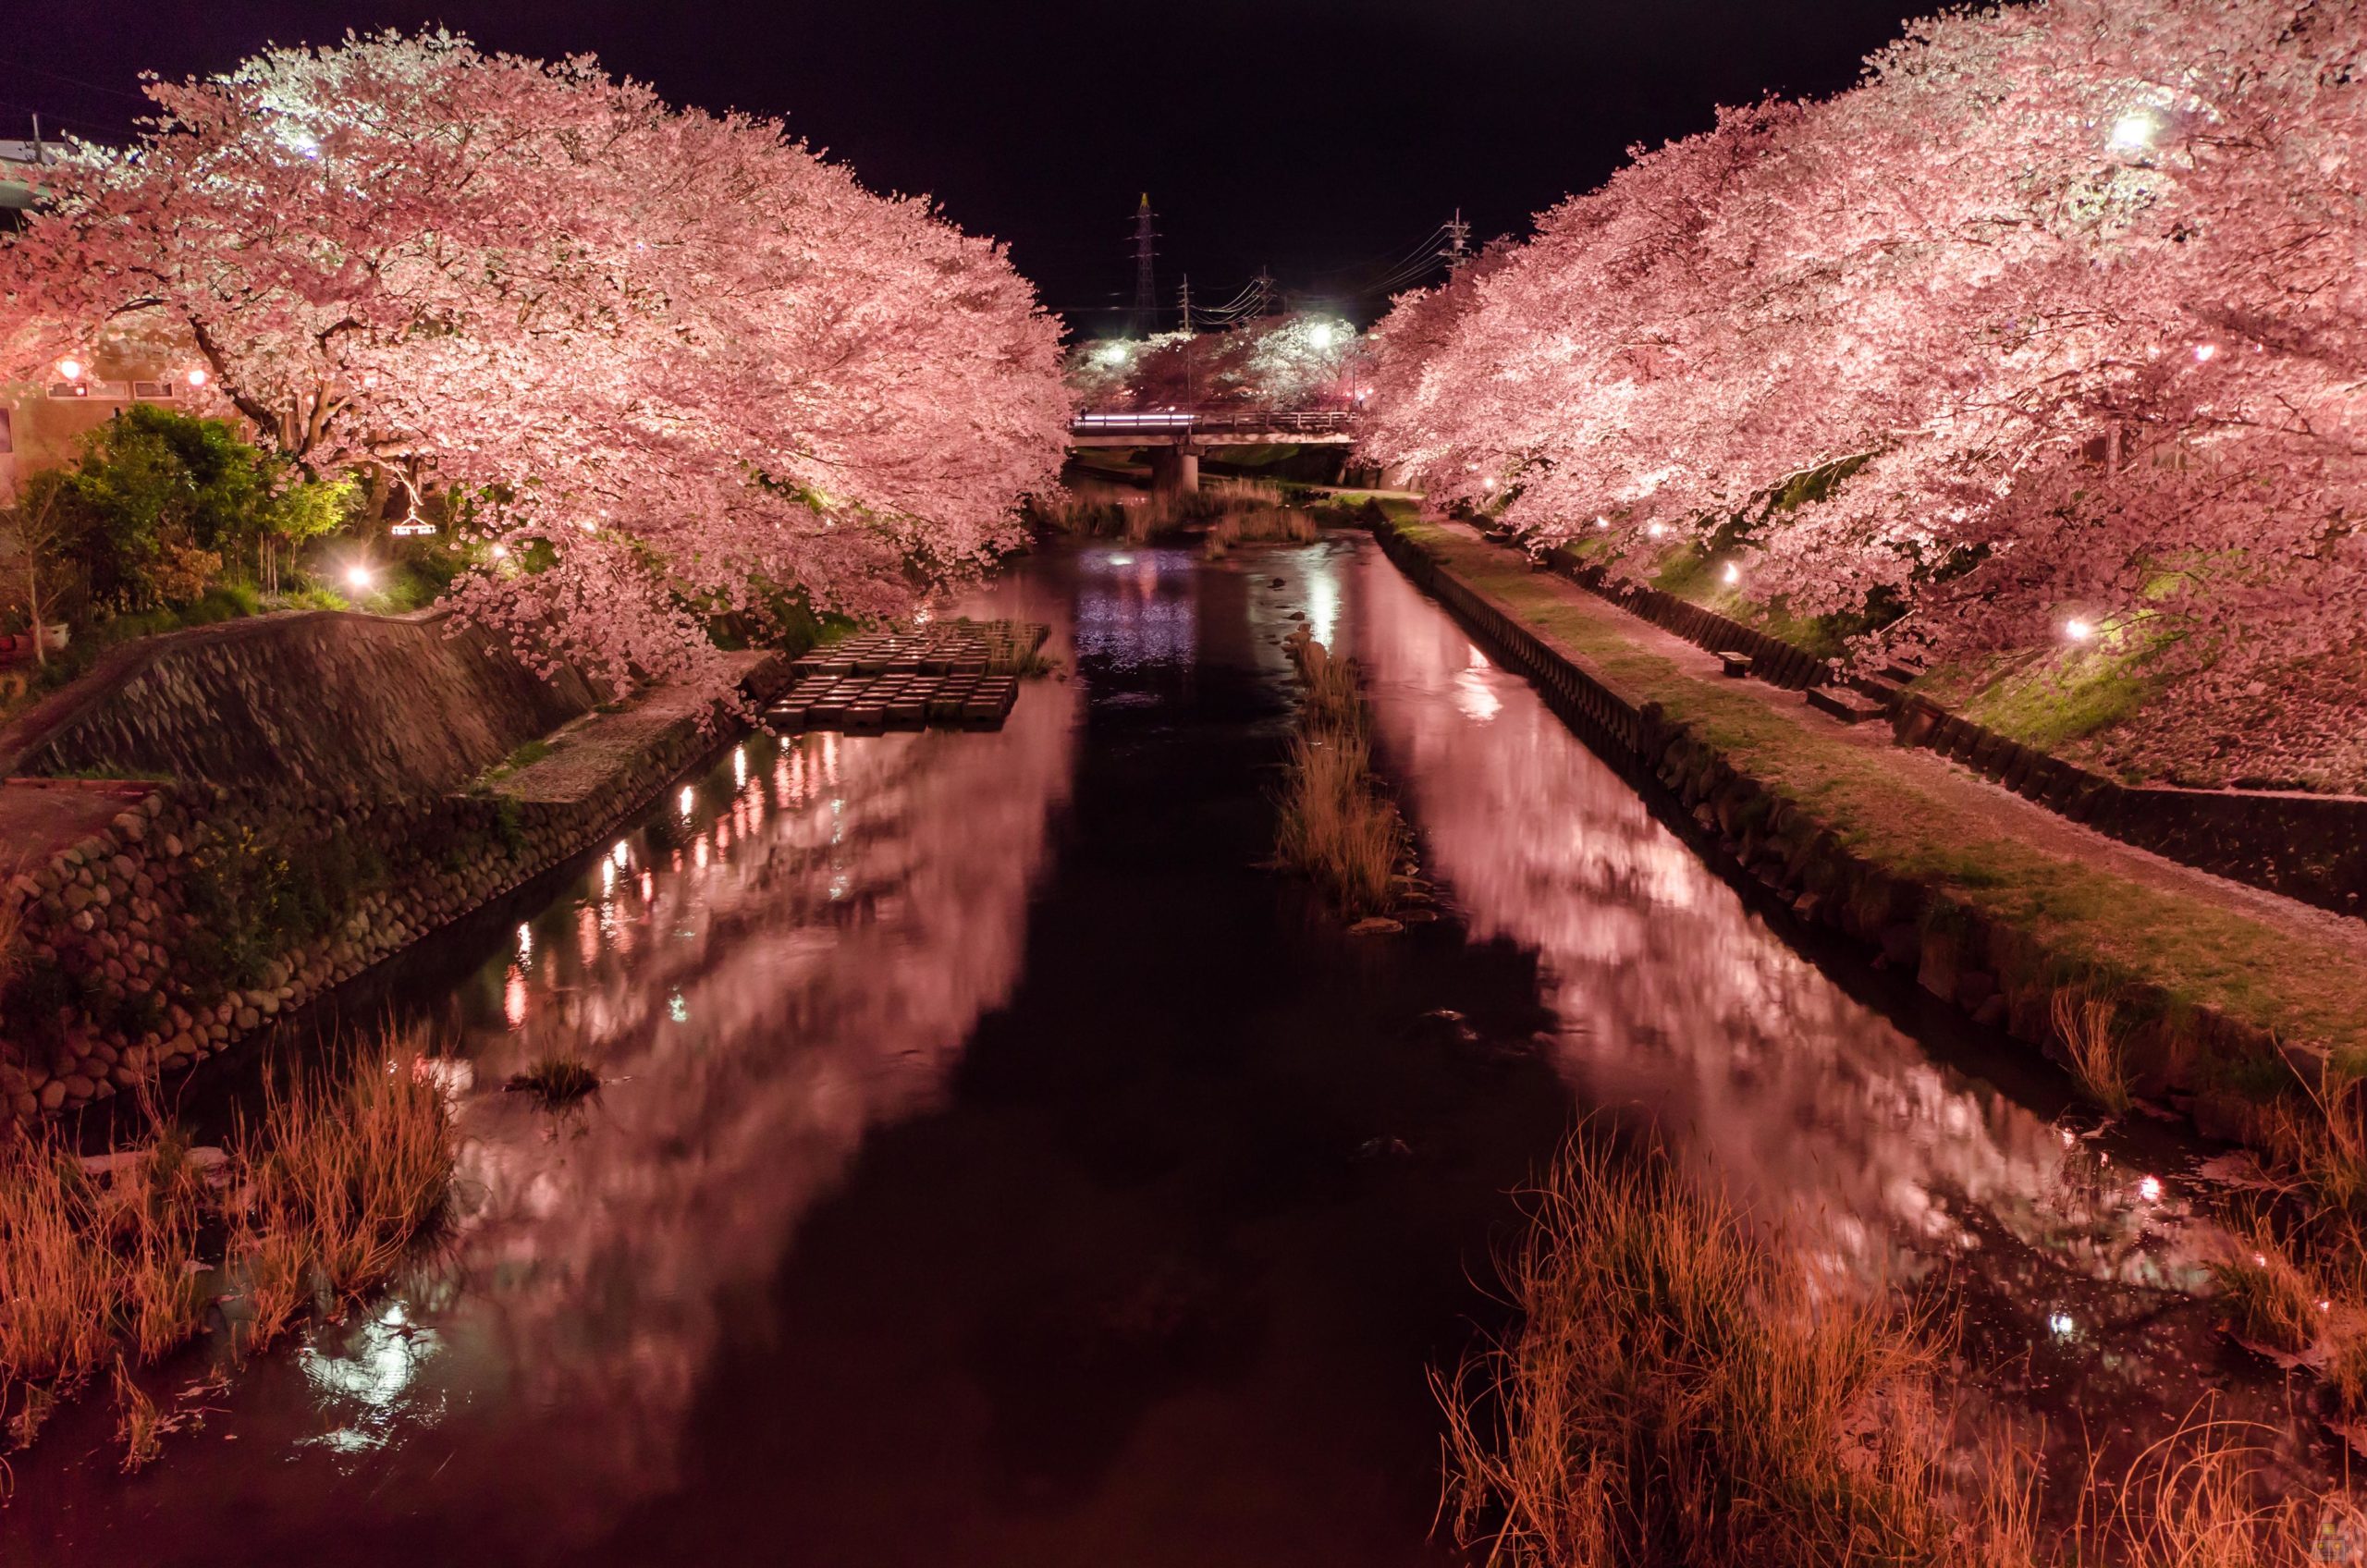 山口 令和2年3月15日桜の開花予定 お持ち帰り テイクアウト可能な山口県美祢市のレッドキングバーガー